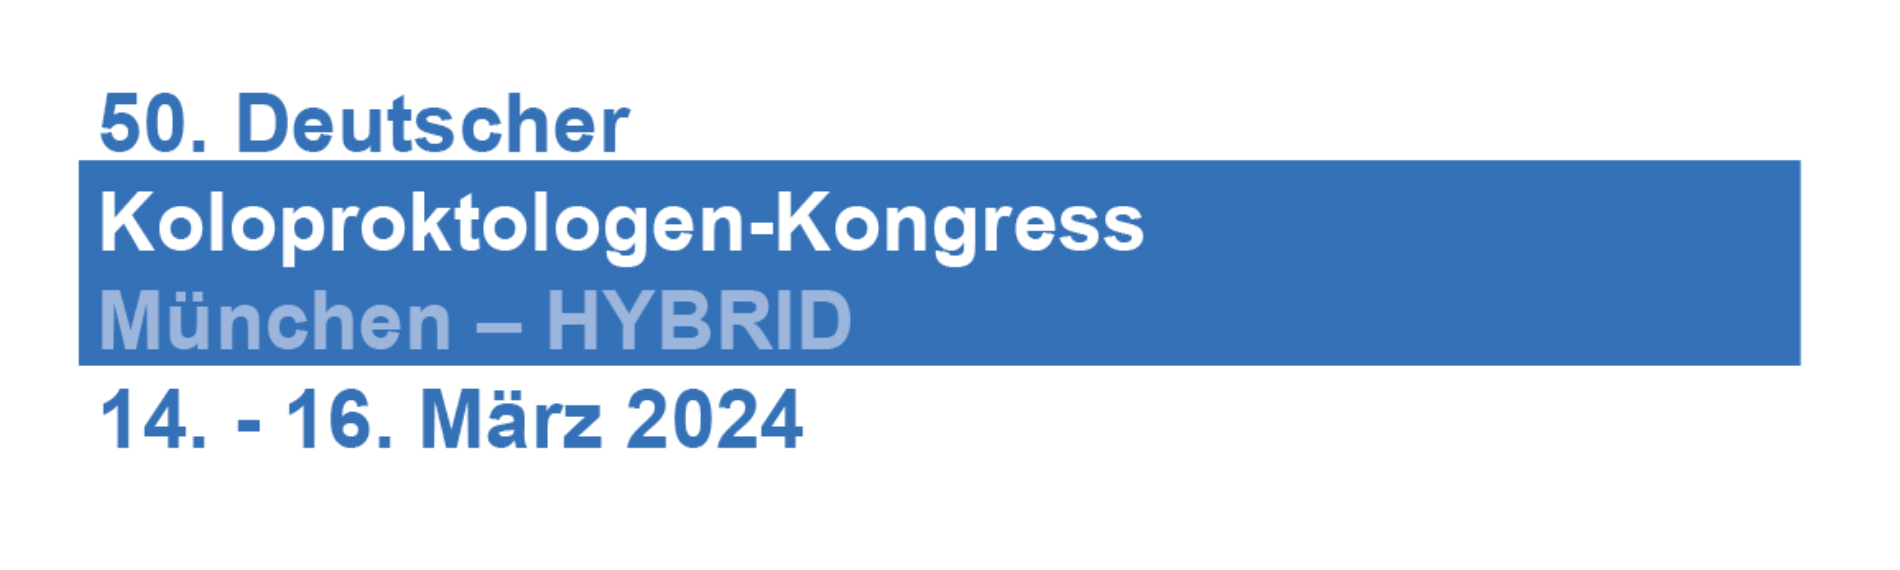 50. Deutscher Koloproktologen Kongress, 14-16 marzo 2024, Monaco